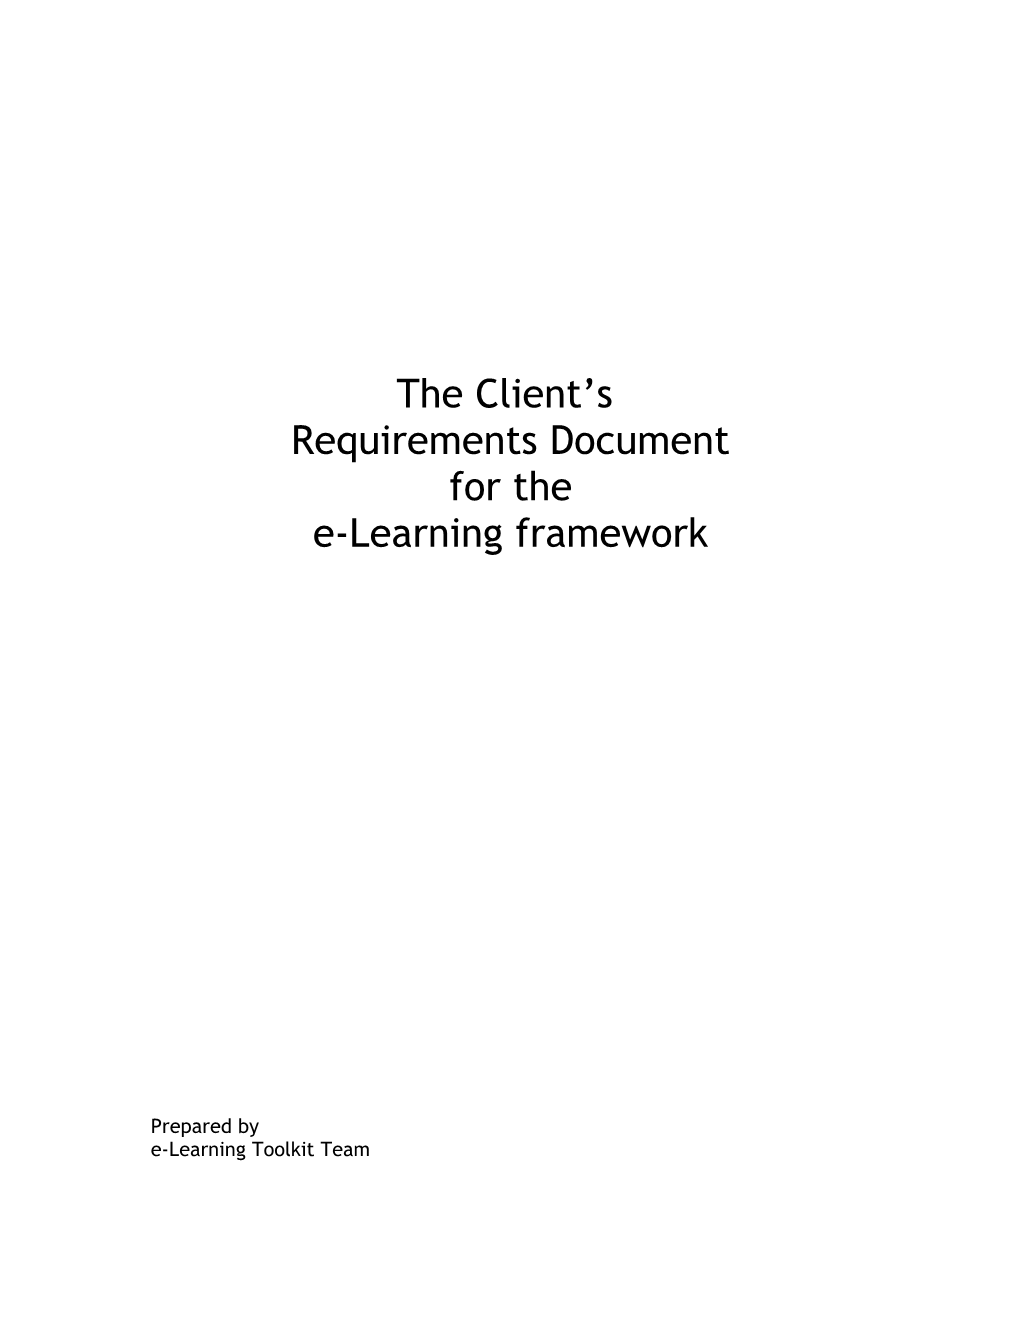 Specification Document for E-Learning Framework